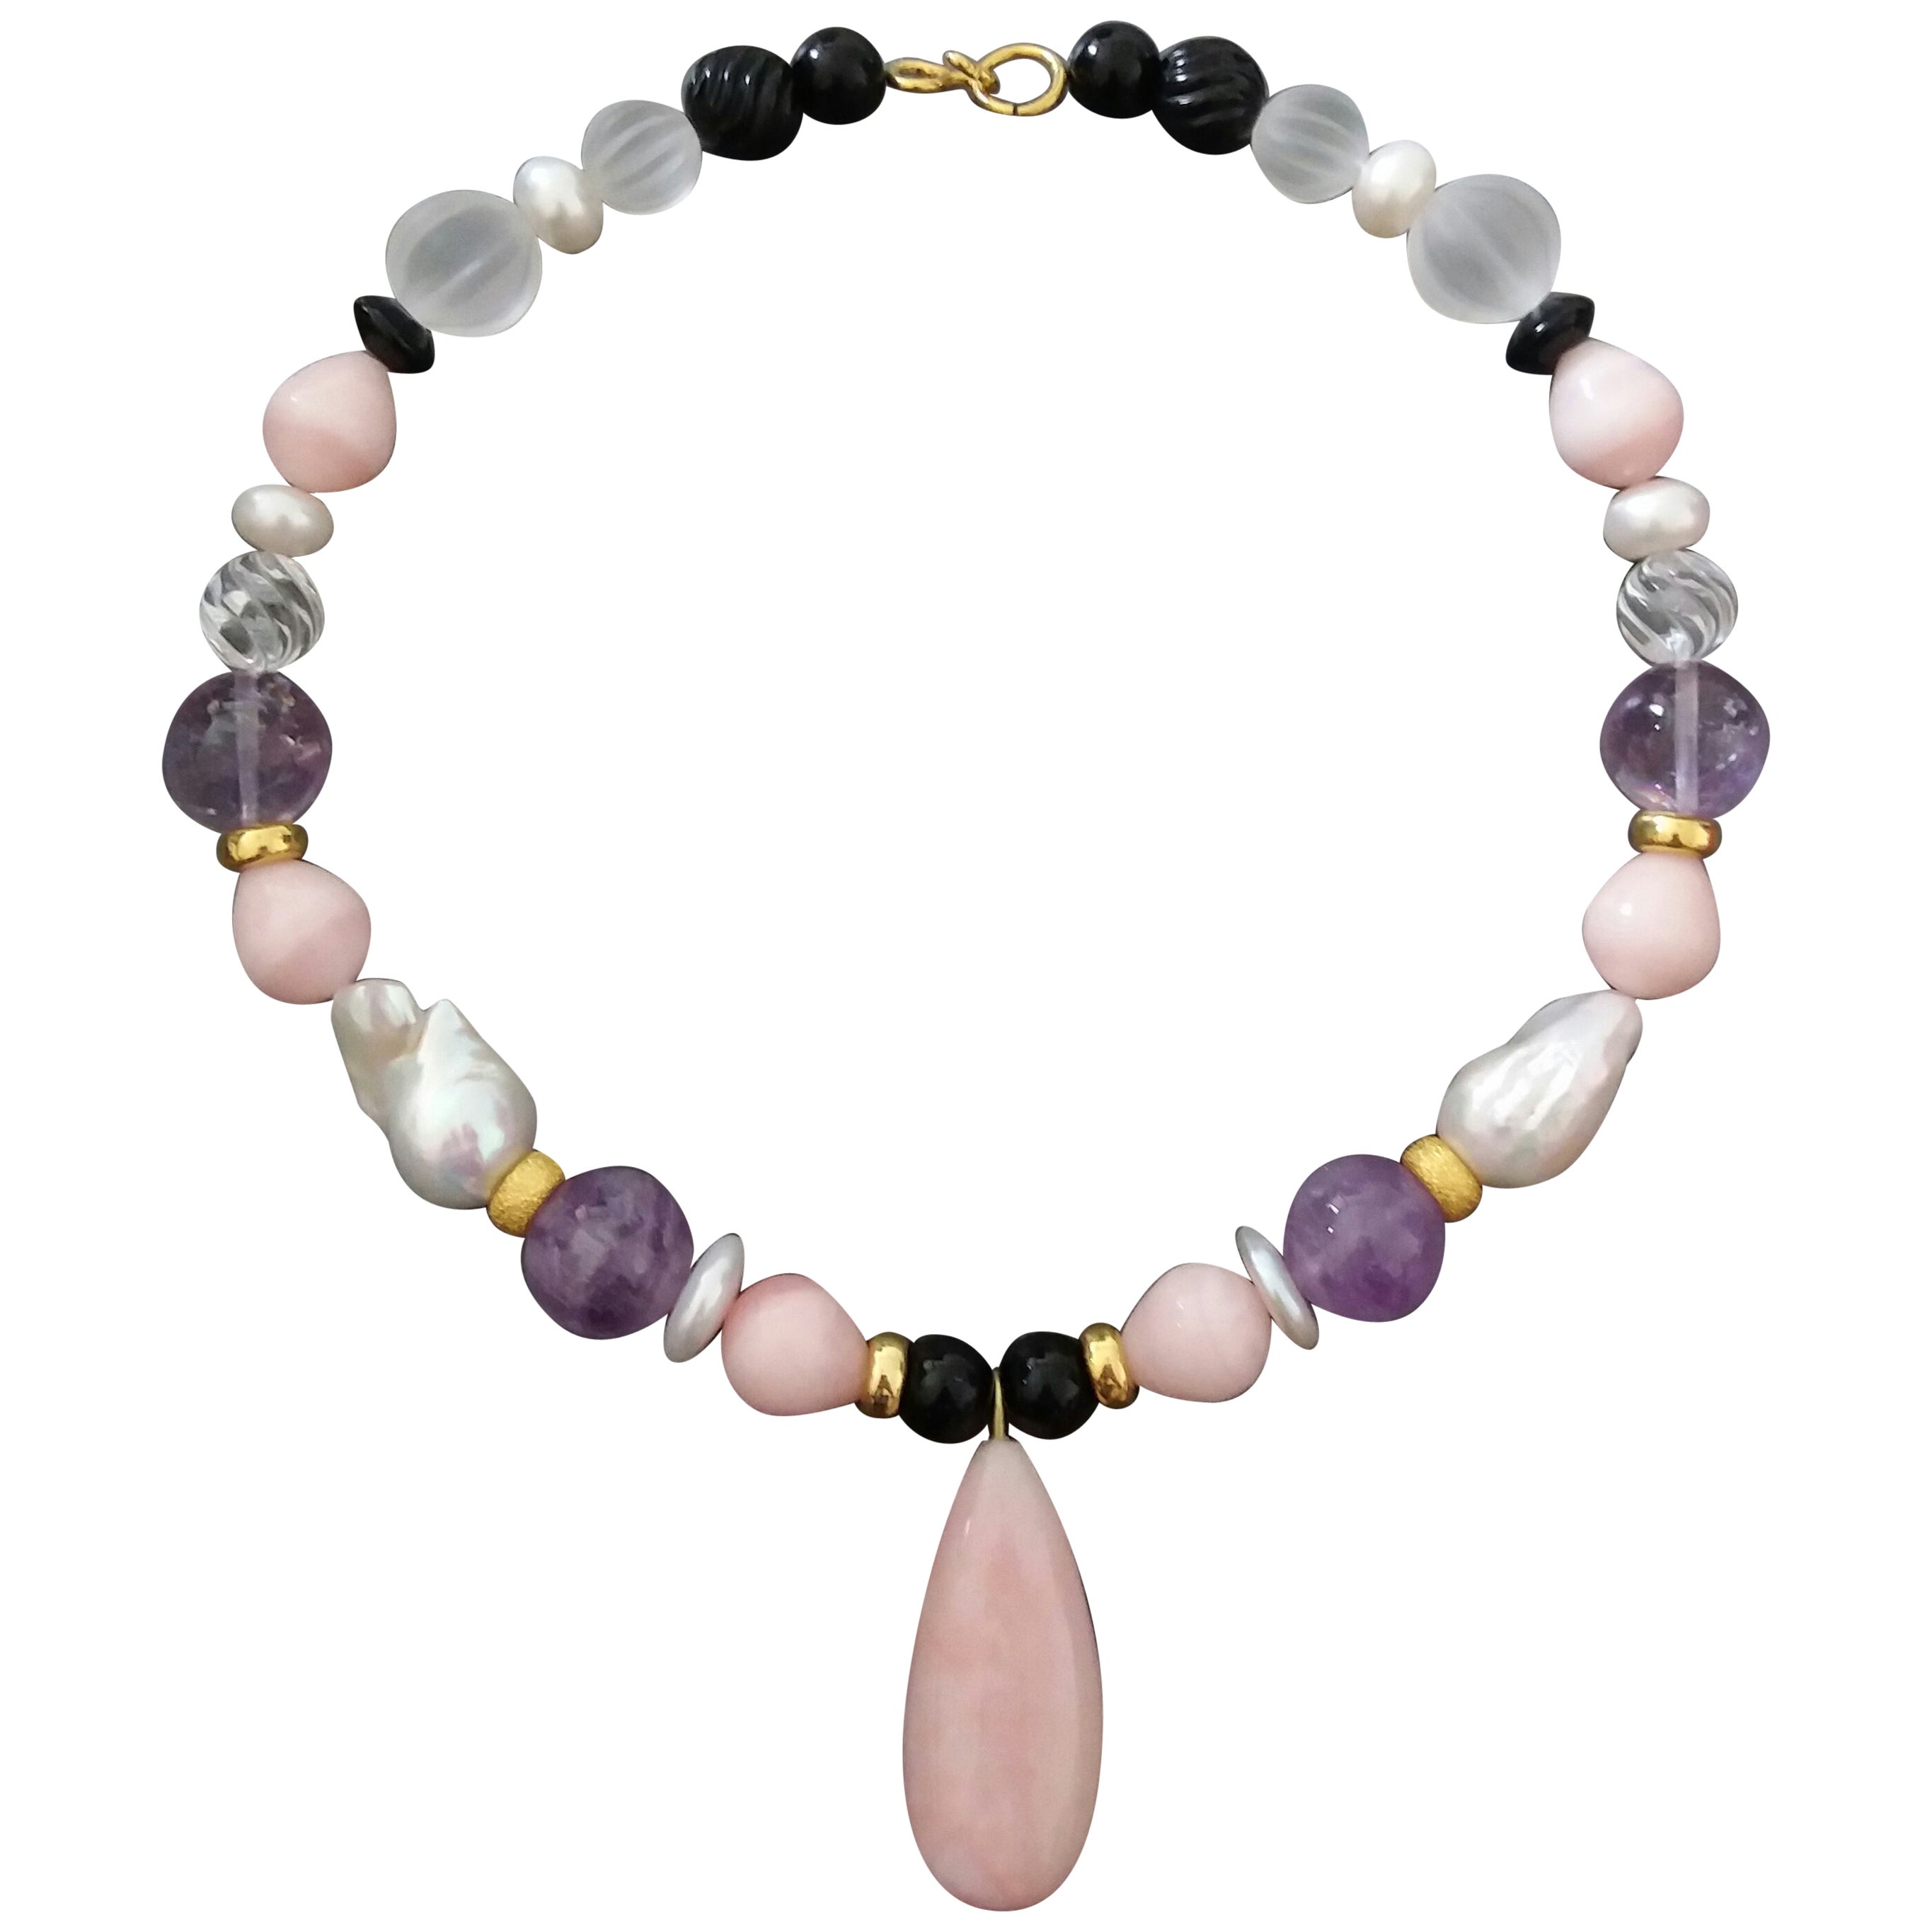 Collier en or jaune avec perles d'opale rose et pendentif, perles d'améthyste, quartz et onyx